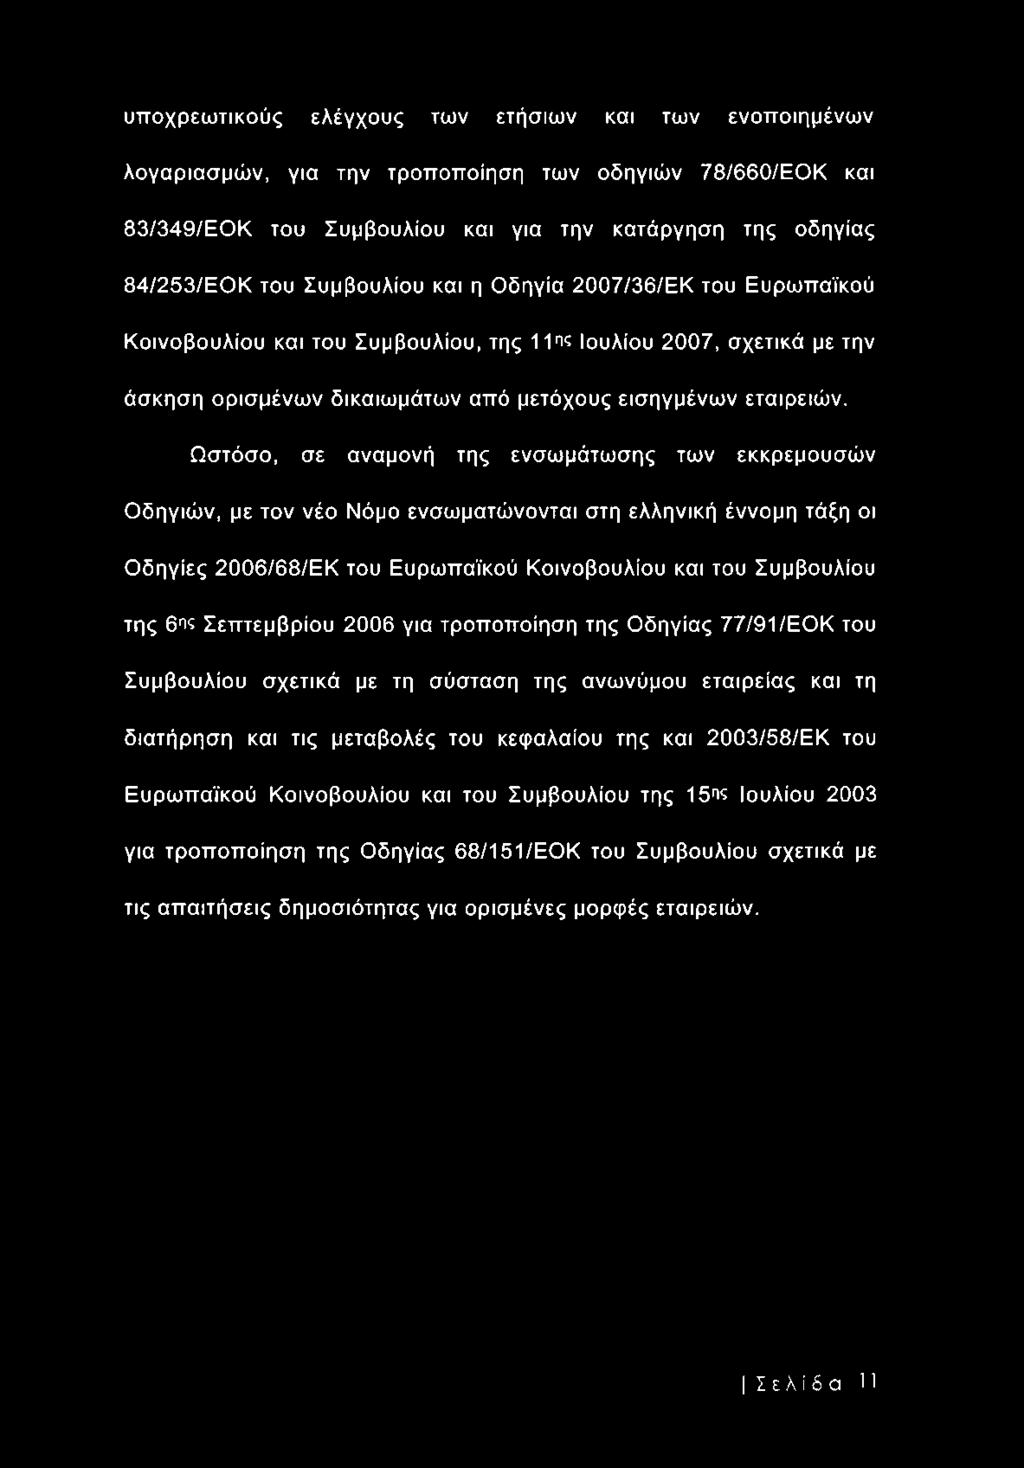 Ωστόσο, σε αναμονή της ενσωμάτωσης των εκκρεμουσών Οδηγιών, με τον νέο Νόμο ενσωματώνονται στη ελληνική έννομη τάξη οι Οδηγίες 2006/68/ΕΚ του Ευρωπαϊκού Κοινοβουλίου και του Συμβουλίου της 6ης